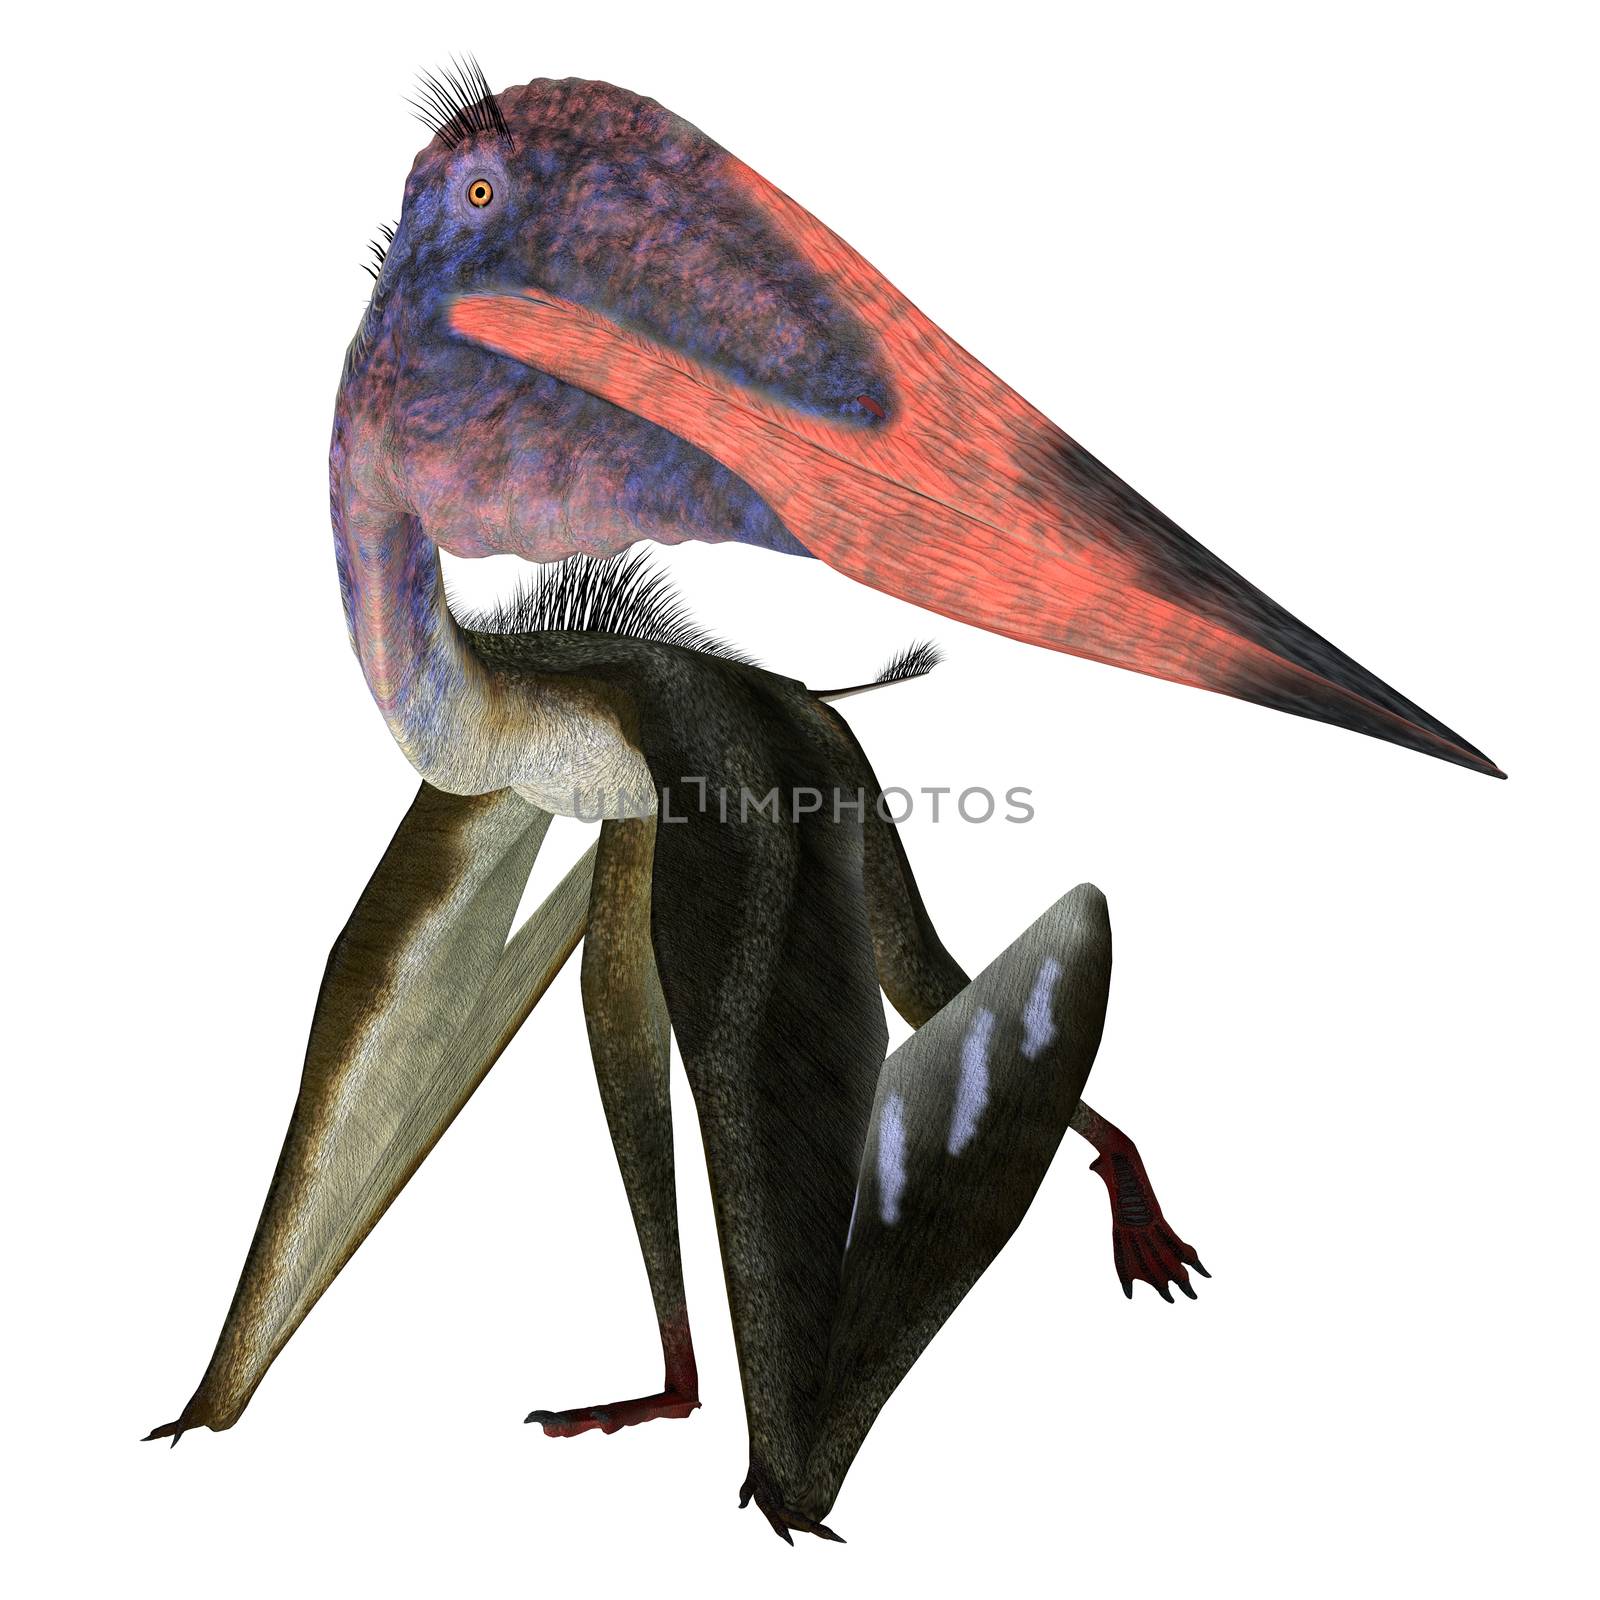 Zhejiangopterus Pterosaur Walking by Catmando